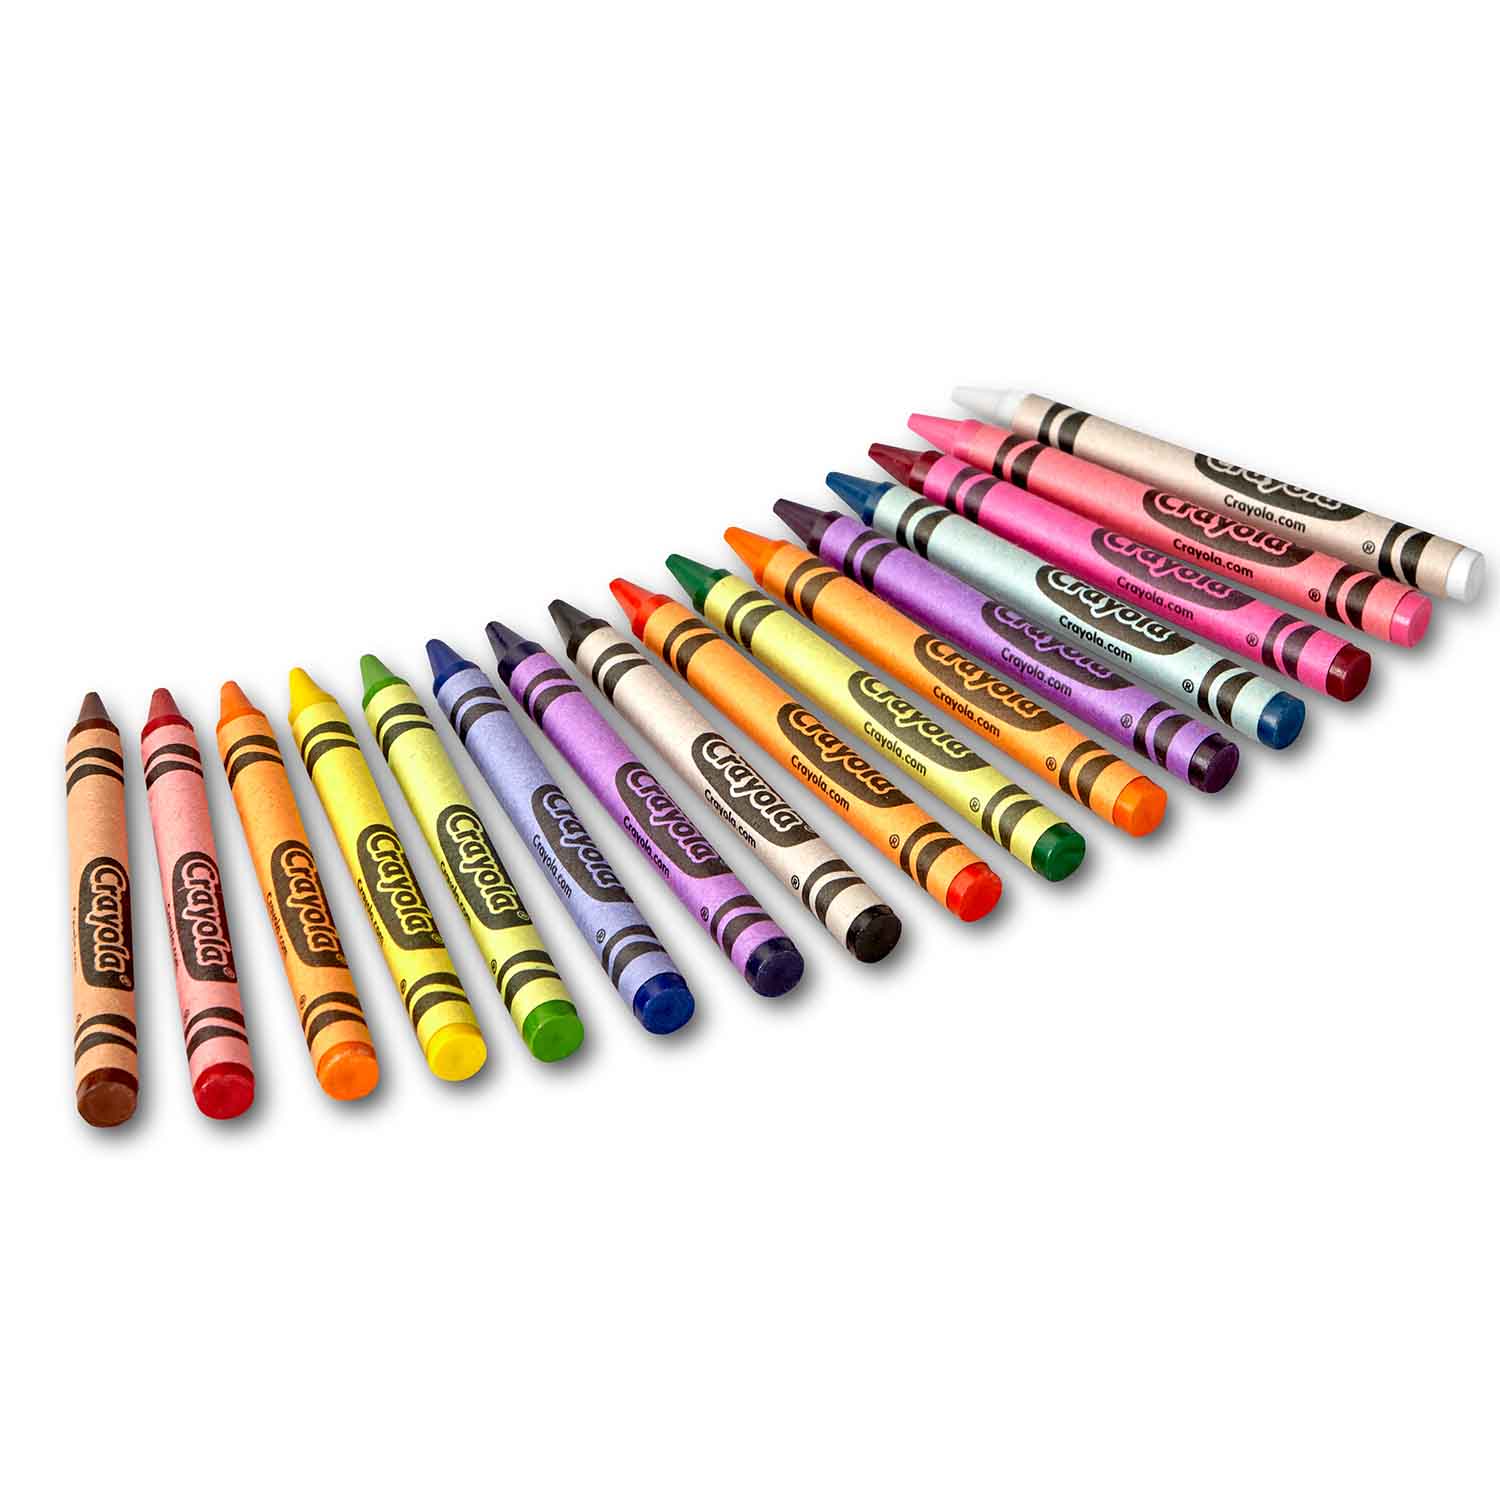 Crayola® Regular Size Crayons - 8, 12, 16, 24 ct